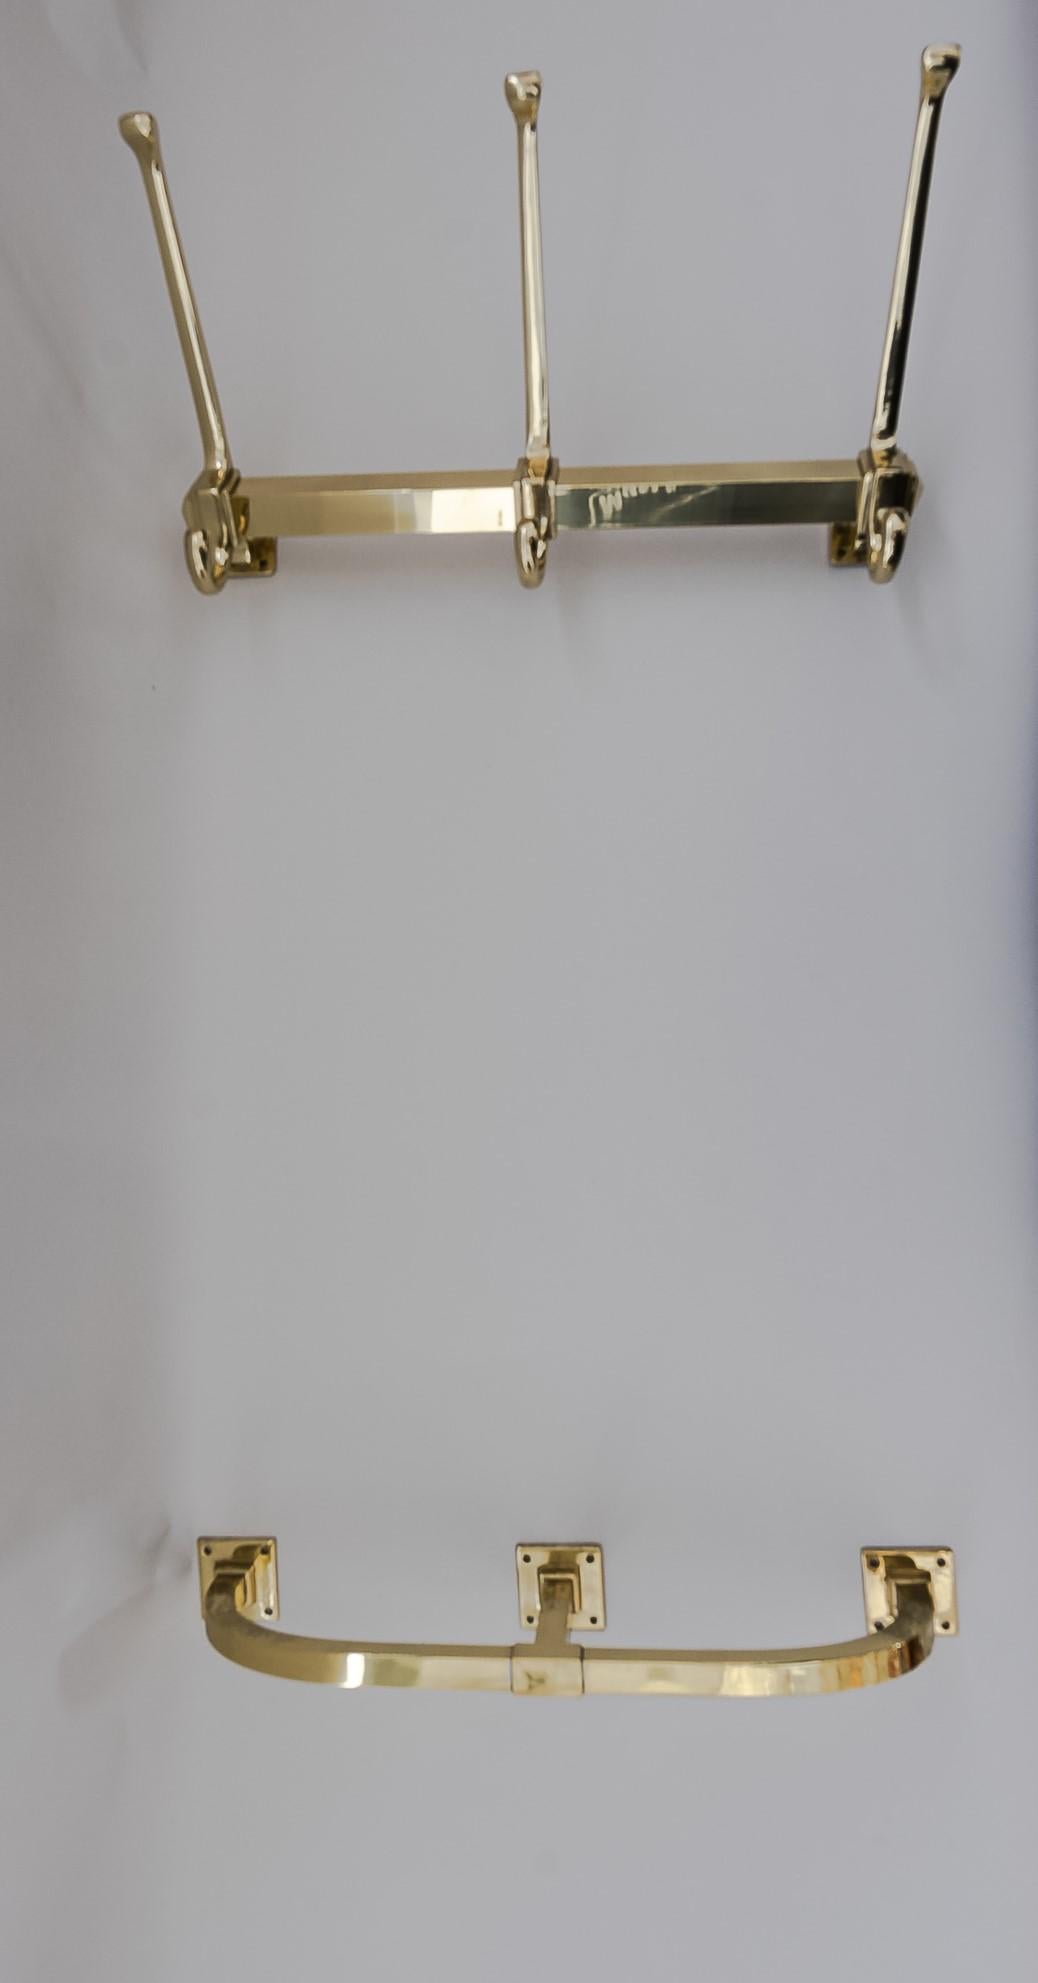 Zwei Art Deco Wandgarderoben mit Schirmhalterung für Wandmontage, um 1920er Jahre
2 Sets wie auf dem Bild (4 Teile)
Maße: Oberer Teil: H 19cm, B 36cm, T 17cm
Unterer Teil: H 4cm, B 39cm, T 10cm.